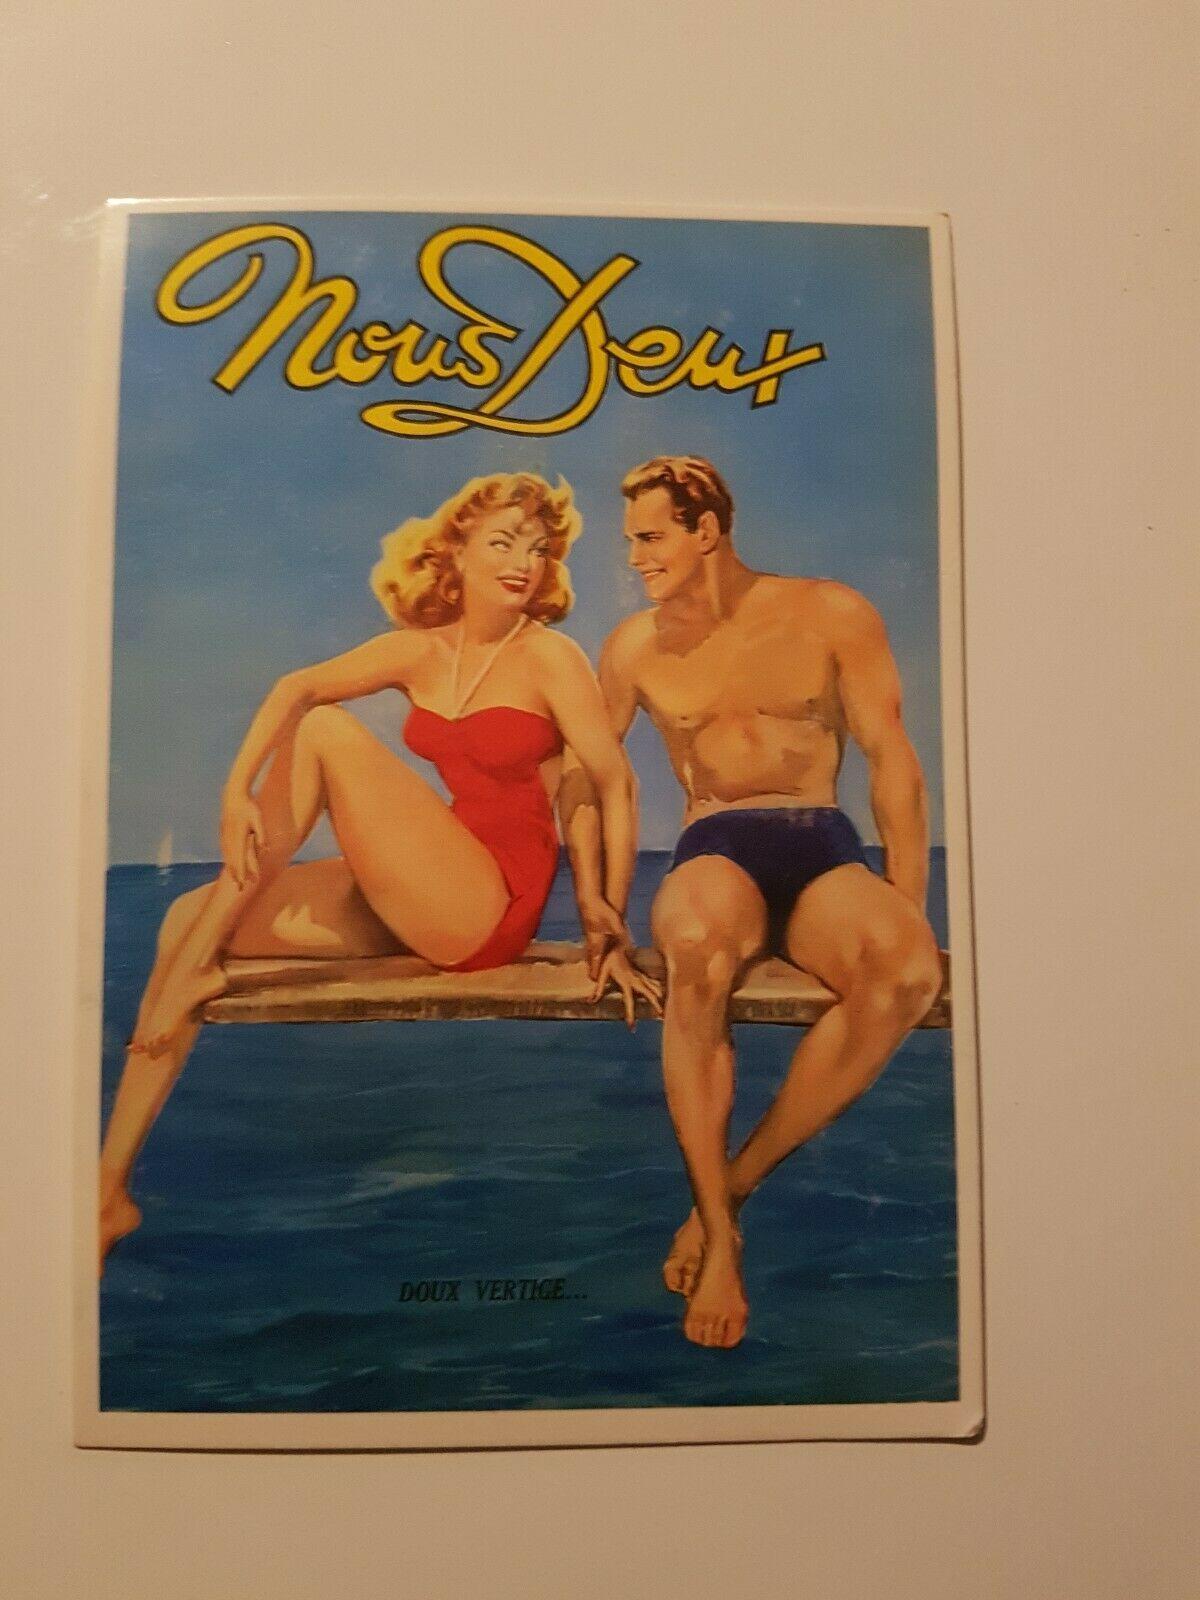 troc de troc je recherche des cartes postales "nous deux" des années 50 image 0